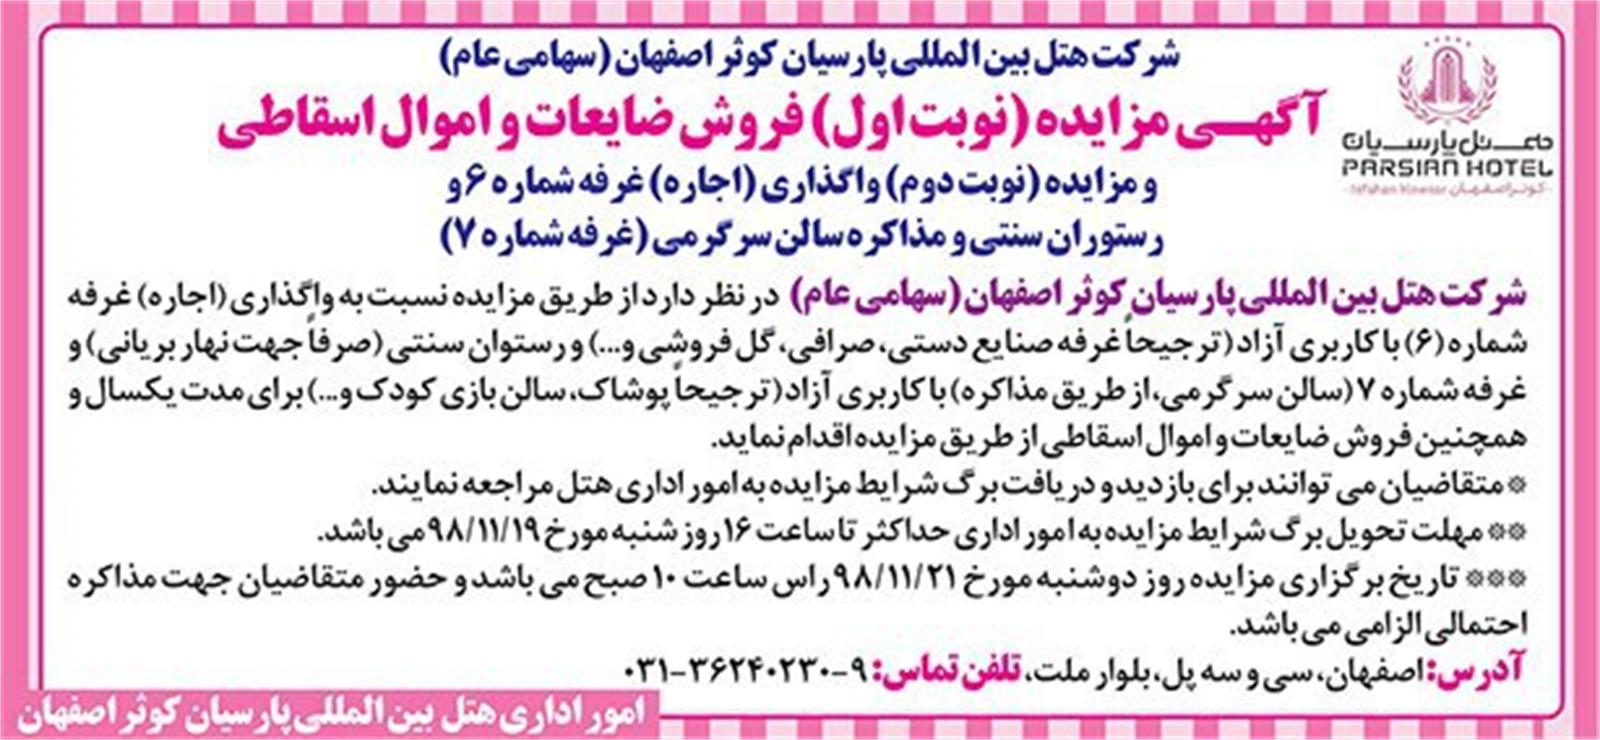 آگهی مزایده هتل بین المللی پارسیان کوثر اصفهان